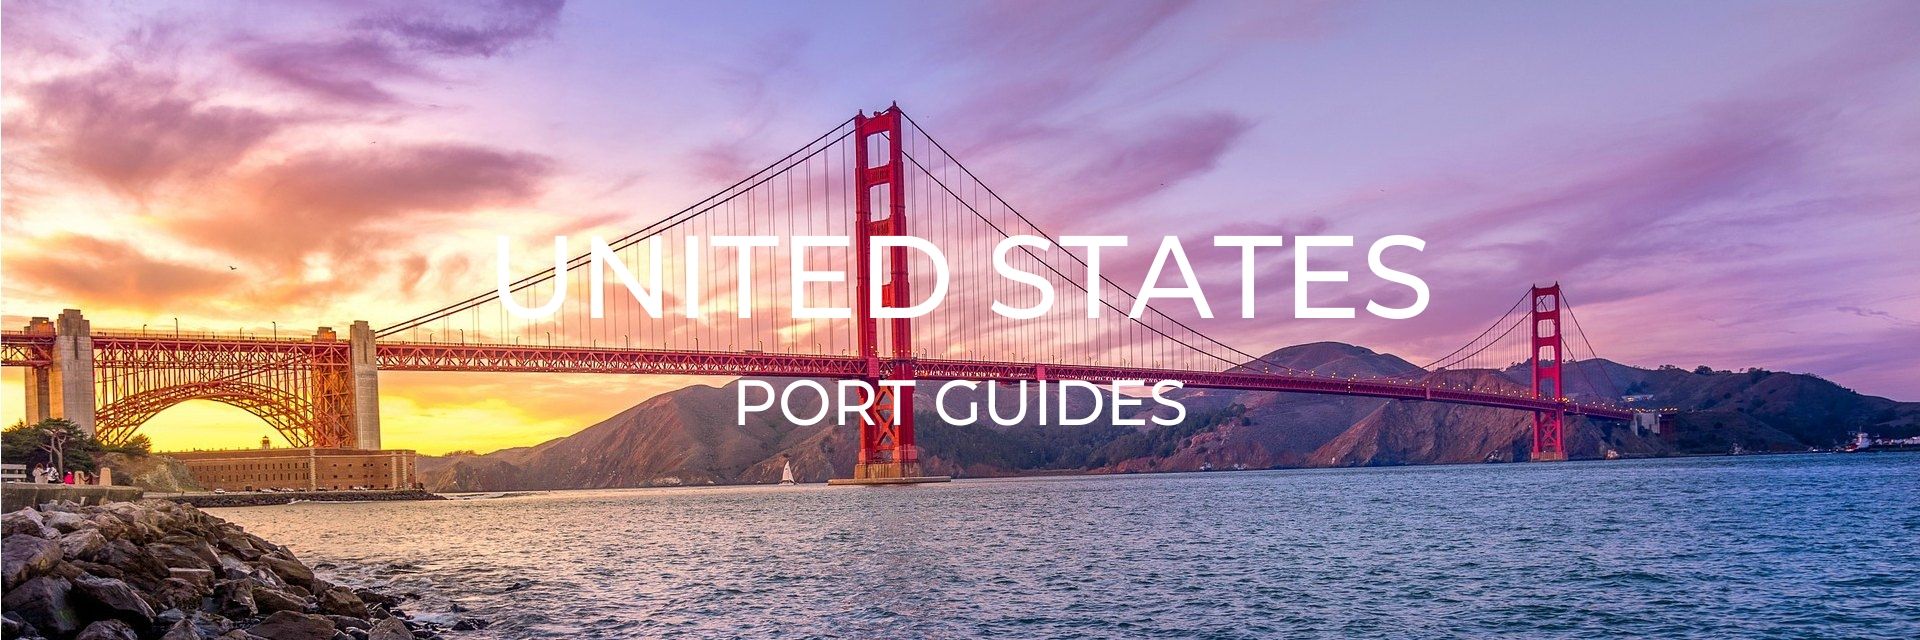 United States Port Guide Desktop Header